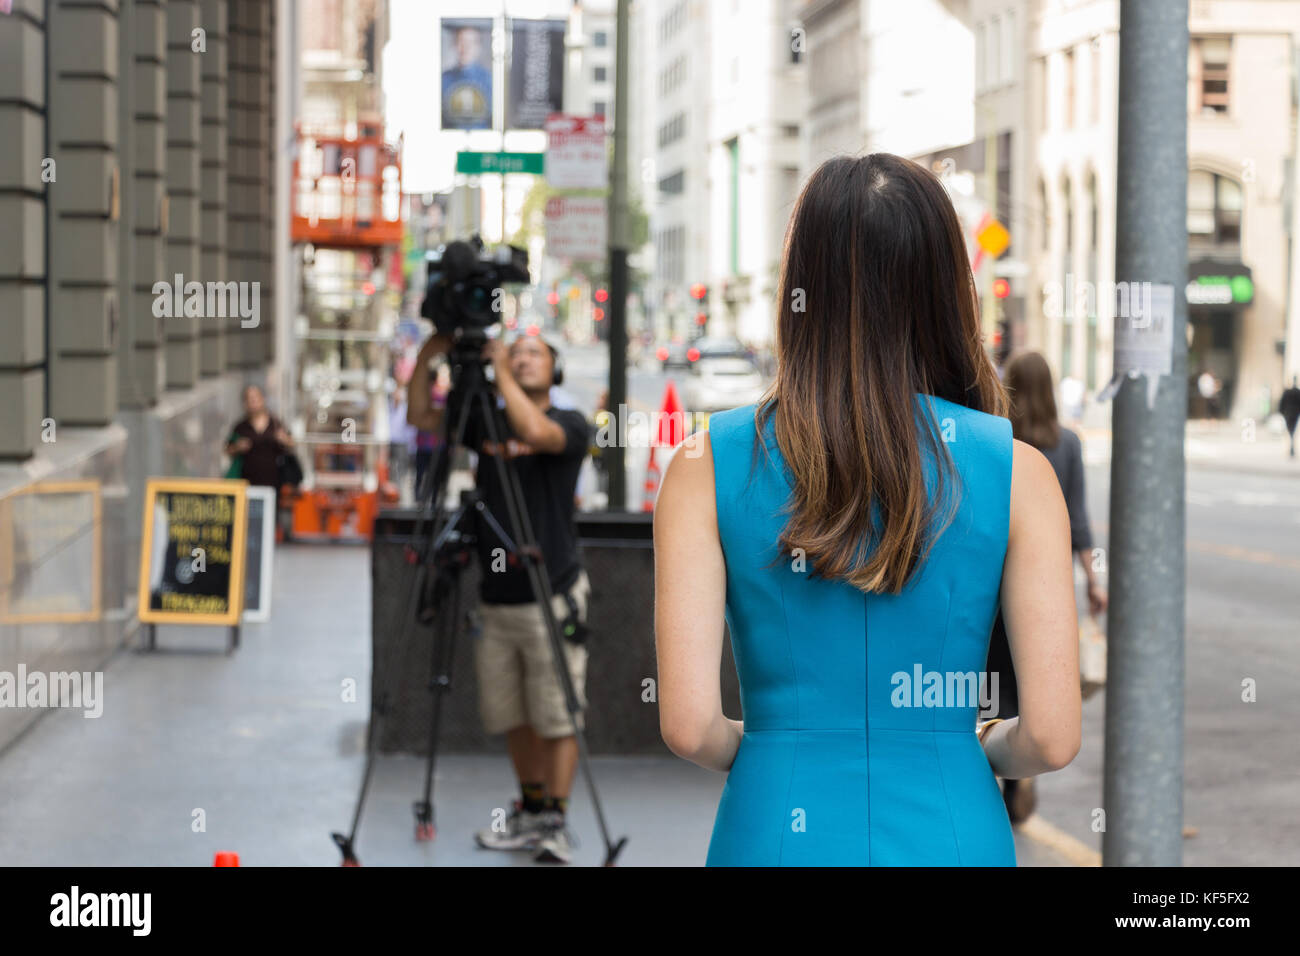 San Francisco, USA - Septembre 13th, 2017 : une femme d'origine asiatique un journaliste de la télévision est à prêt à diffuser à un coin de la ville de San Francisco. Banque D'Images